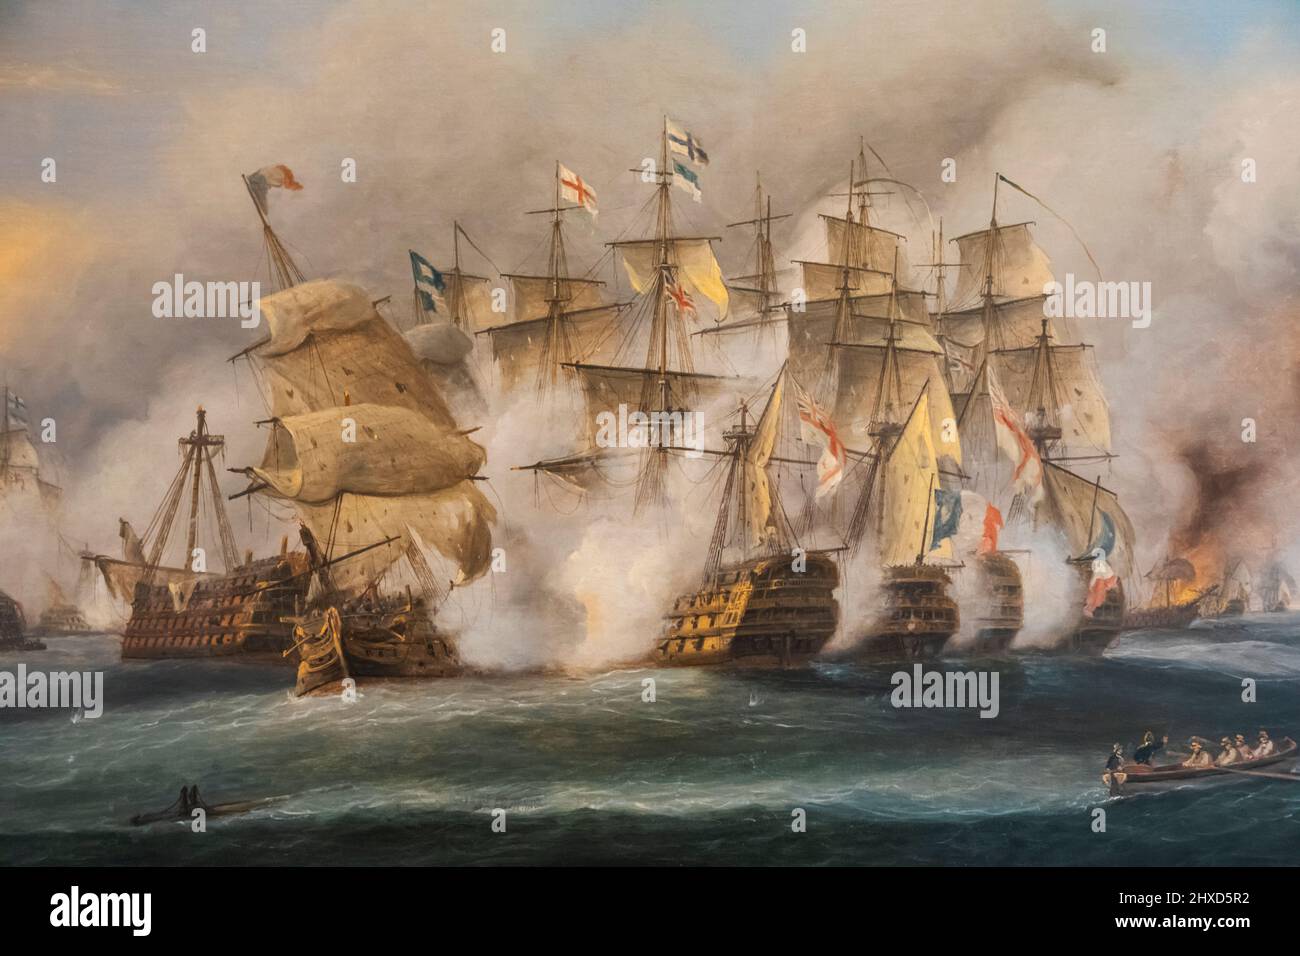 England, Hampshire, Portsmouth, Portsmouth Historic Dockyard, The Royal Navy National Museum, Ölgemälde mit dem Titel „The Battle of Trafalgar“, das die Szene am 21. Oktober 1805 von Thomas Luny darstellt Stockfoto